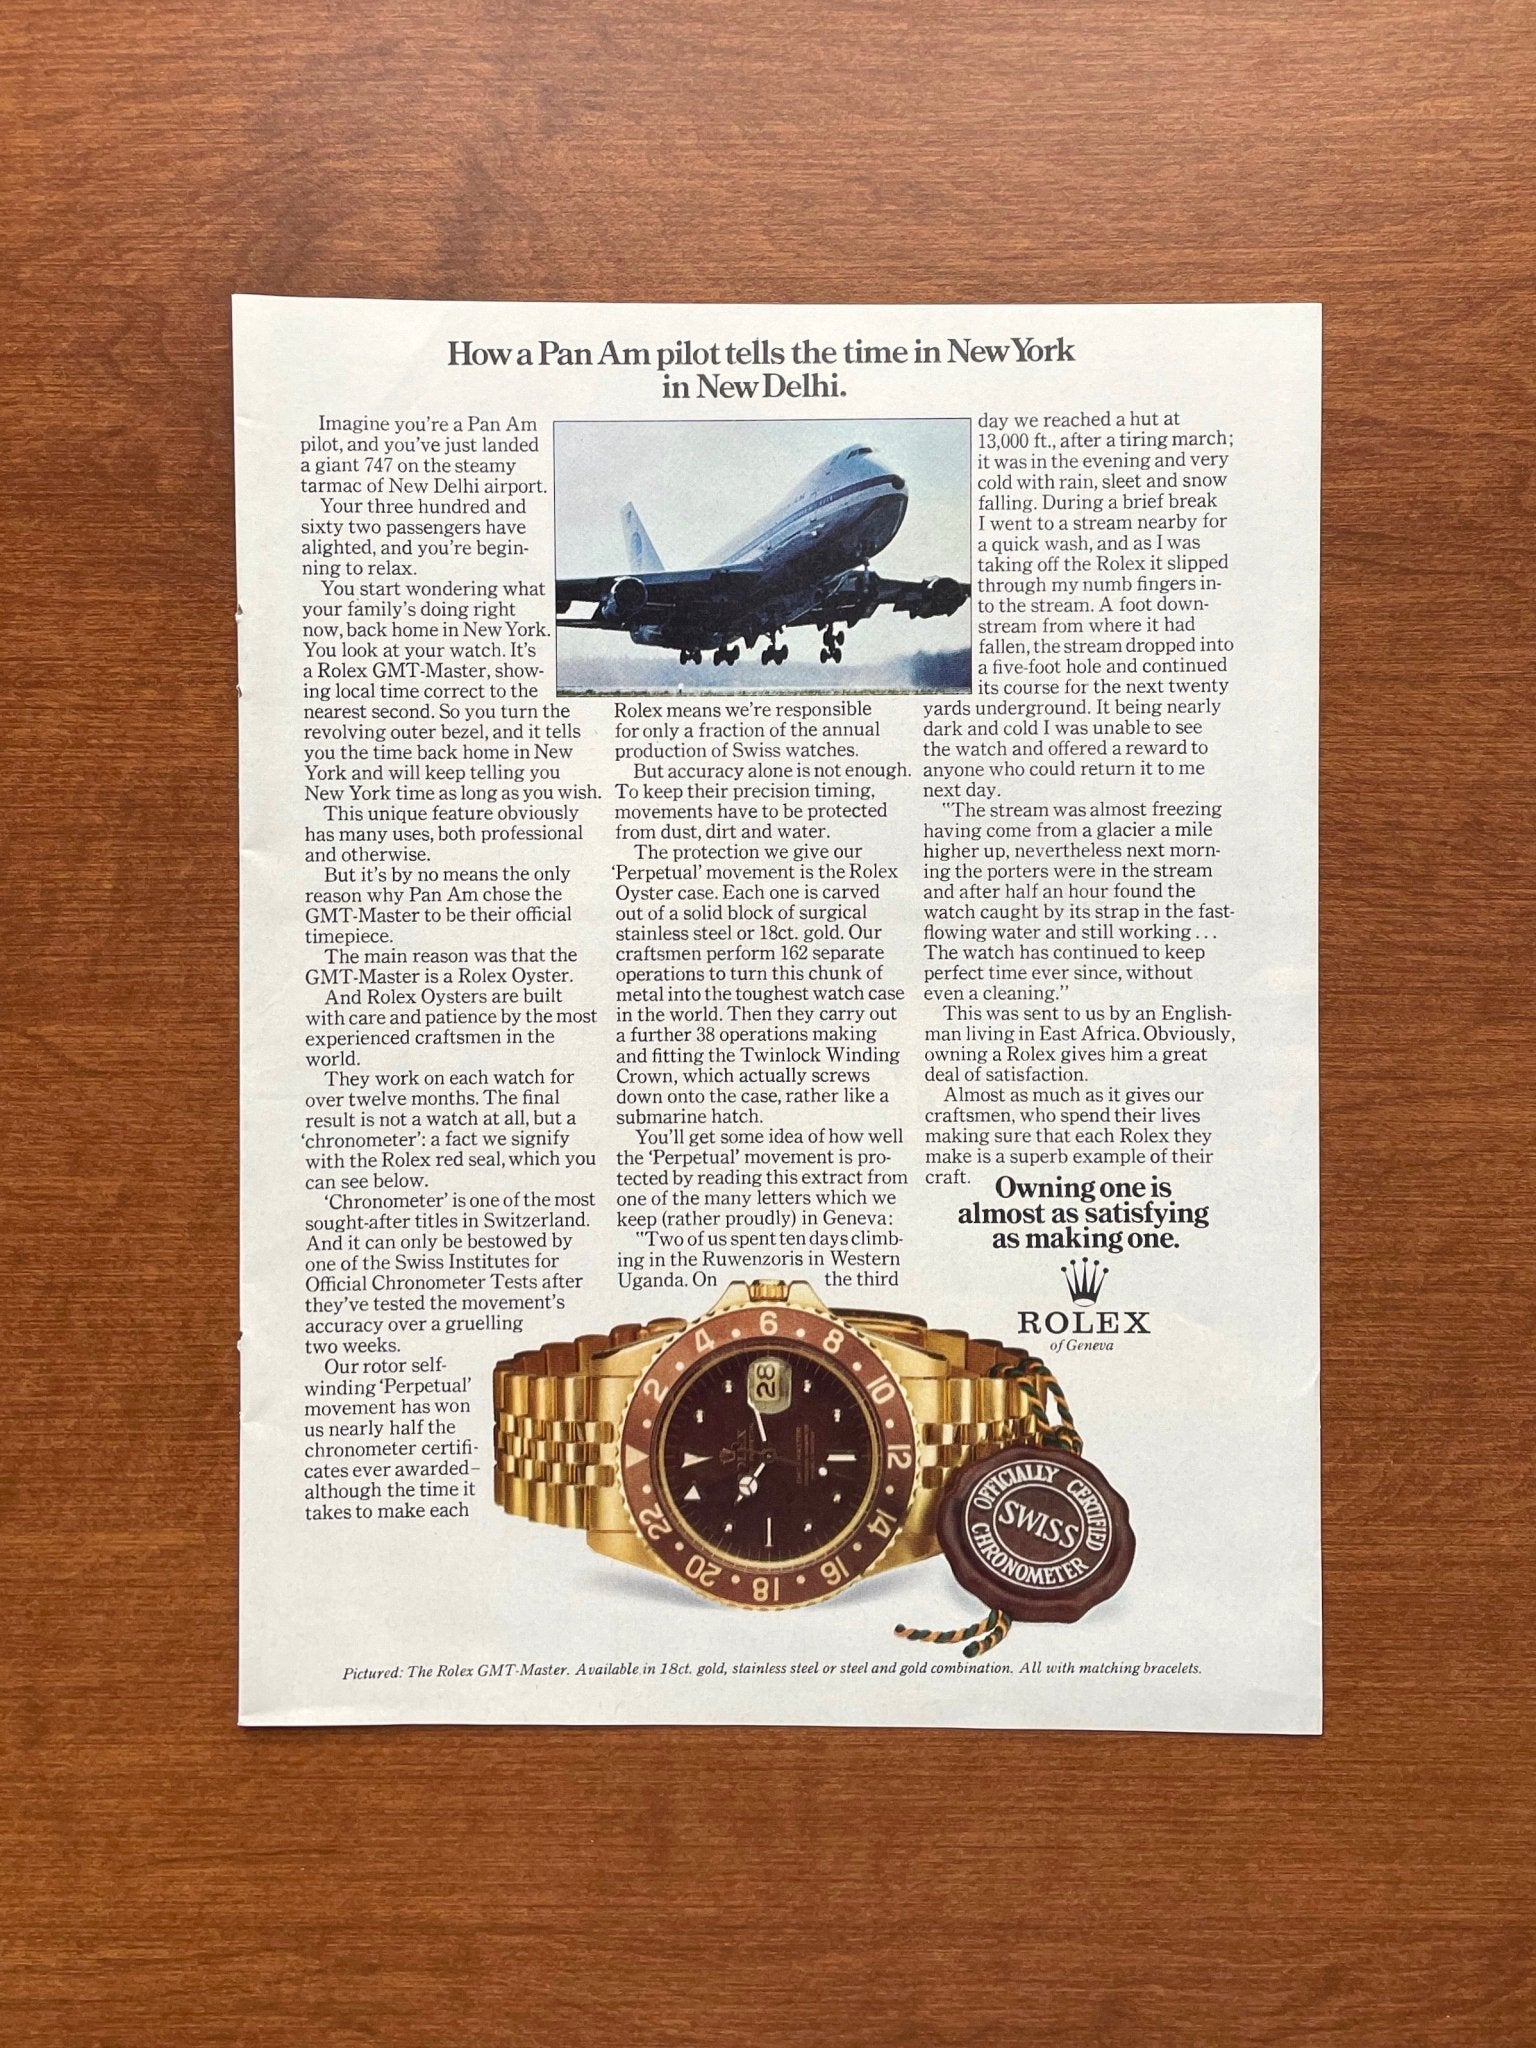 1973 Rolex GMT Master Ref. 1675 "How a Pan Am pilot..." Advertisement